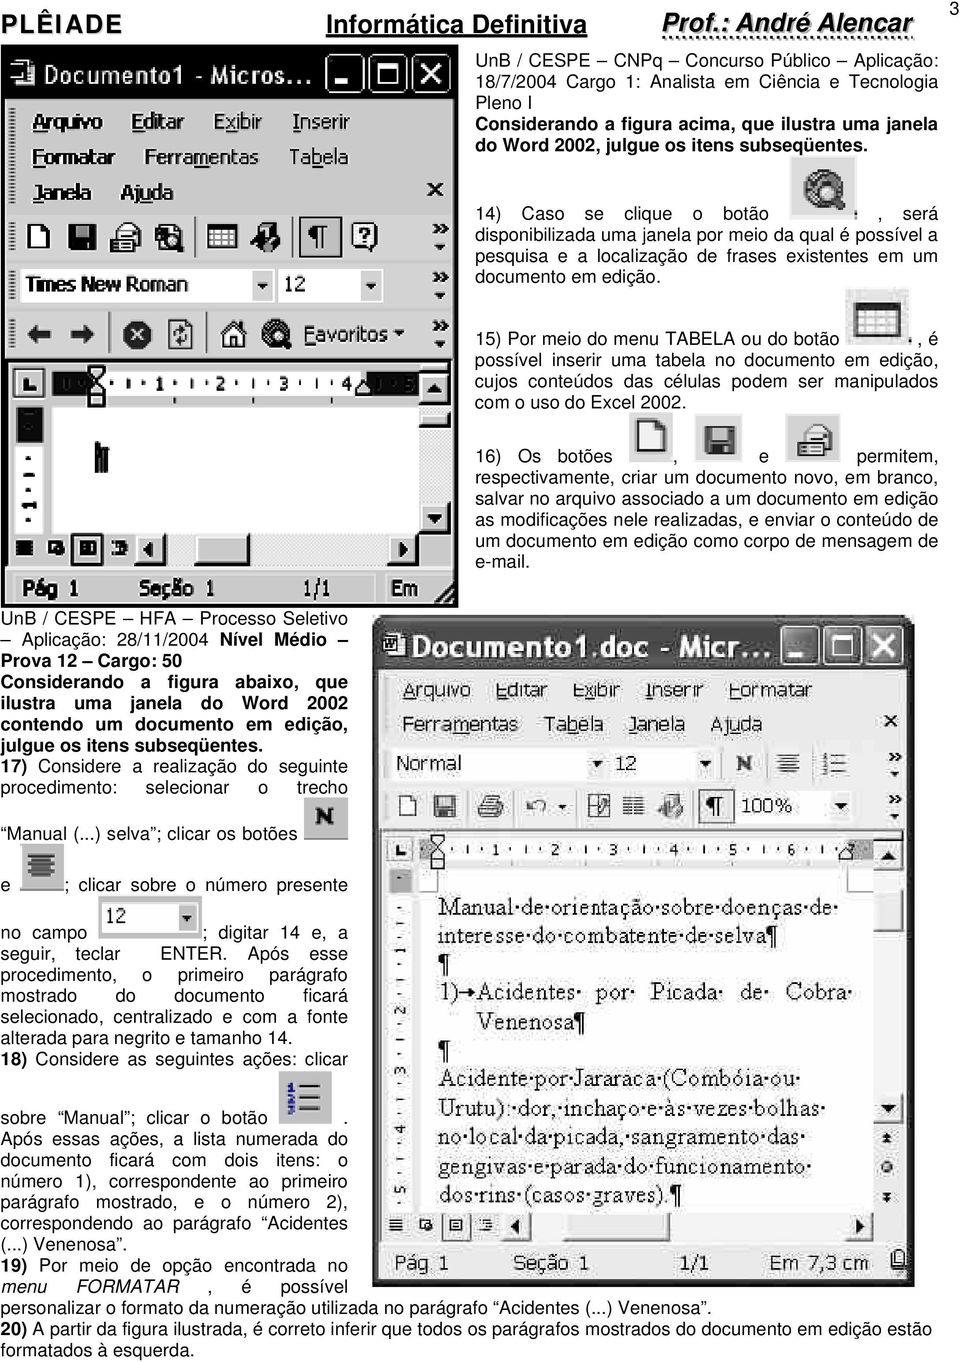 15) Por meio do menu TABELA ou do botão, é possível inserir uma tabela no documento em edição, cujos conteúdos das células podem ser manipulados com o uso do Excel 2002.